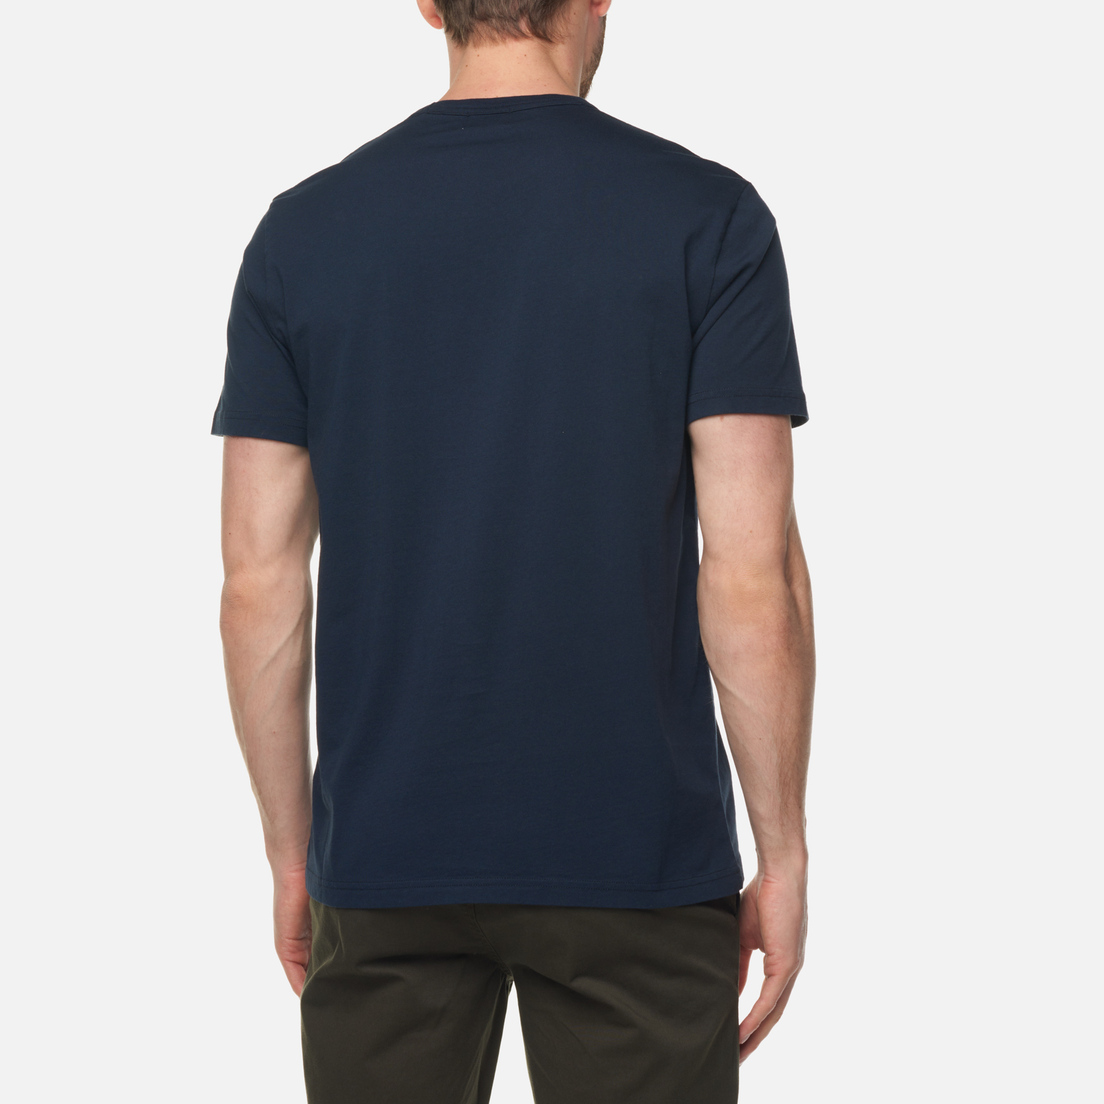 Woolrich Мужская футболка Intarsia